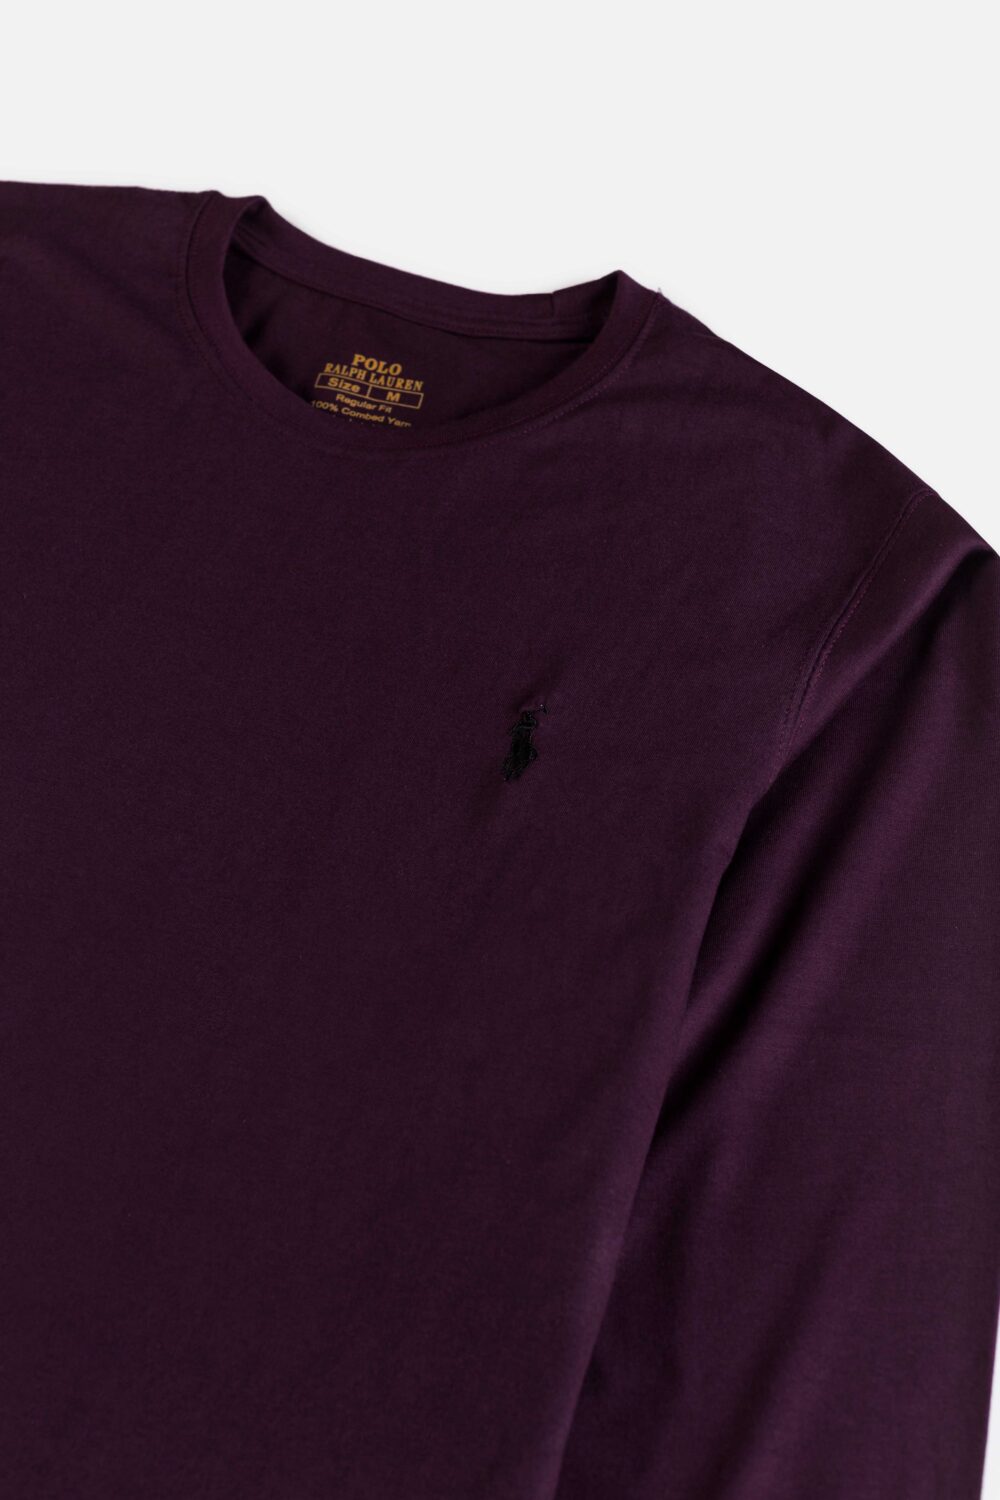 RL Premium Basic Full T Shirt – Maroon